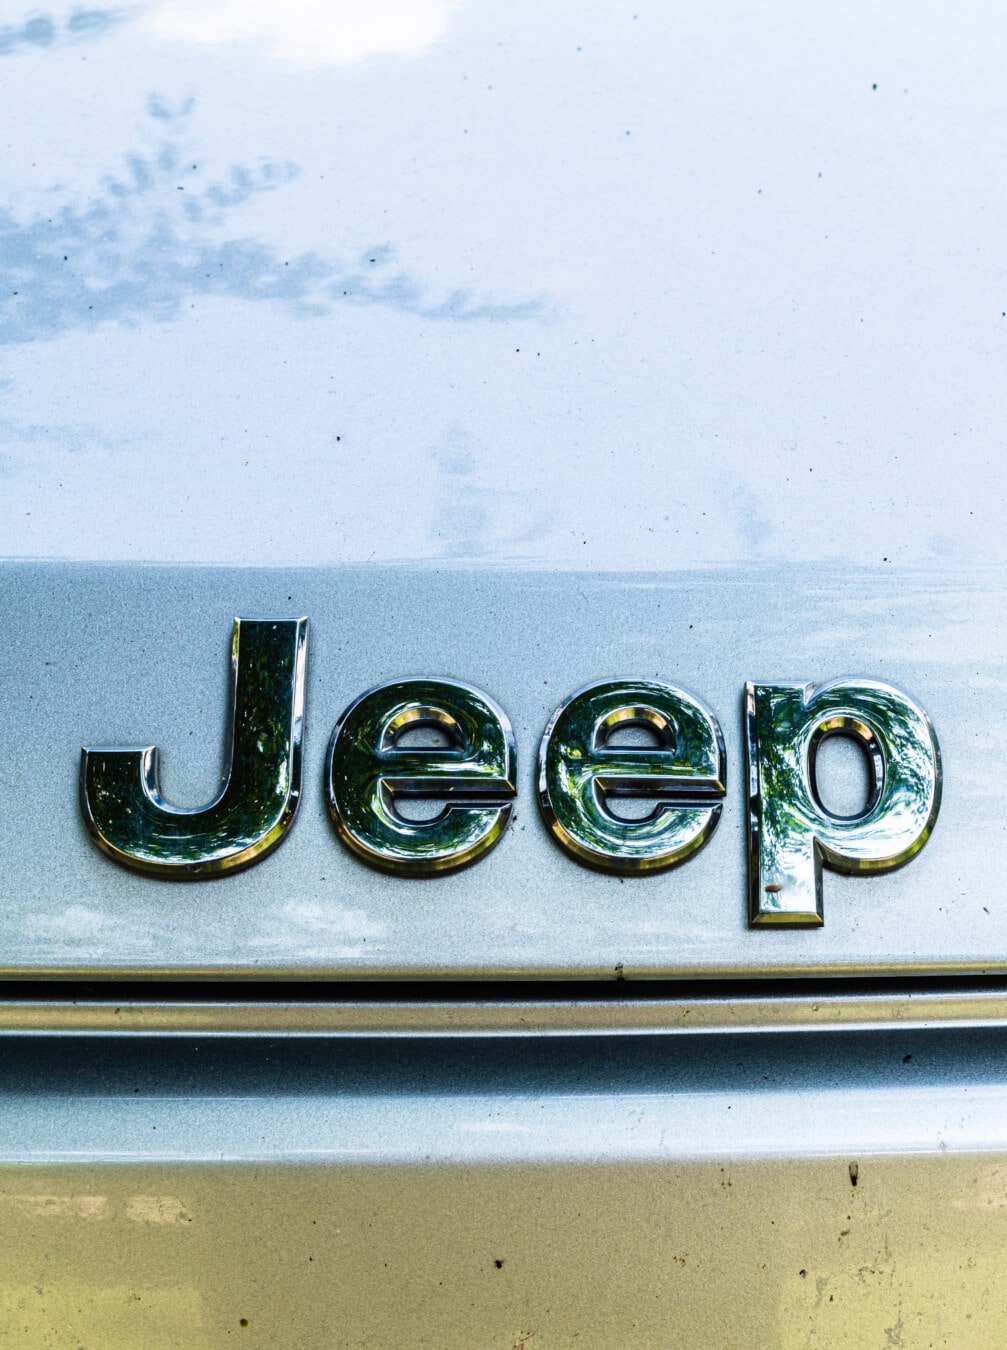 Jeep, voiture, automobile, symbole, signe, métalliques, réflexion, chrome, texte, vintage